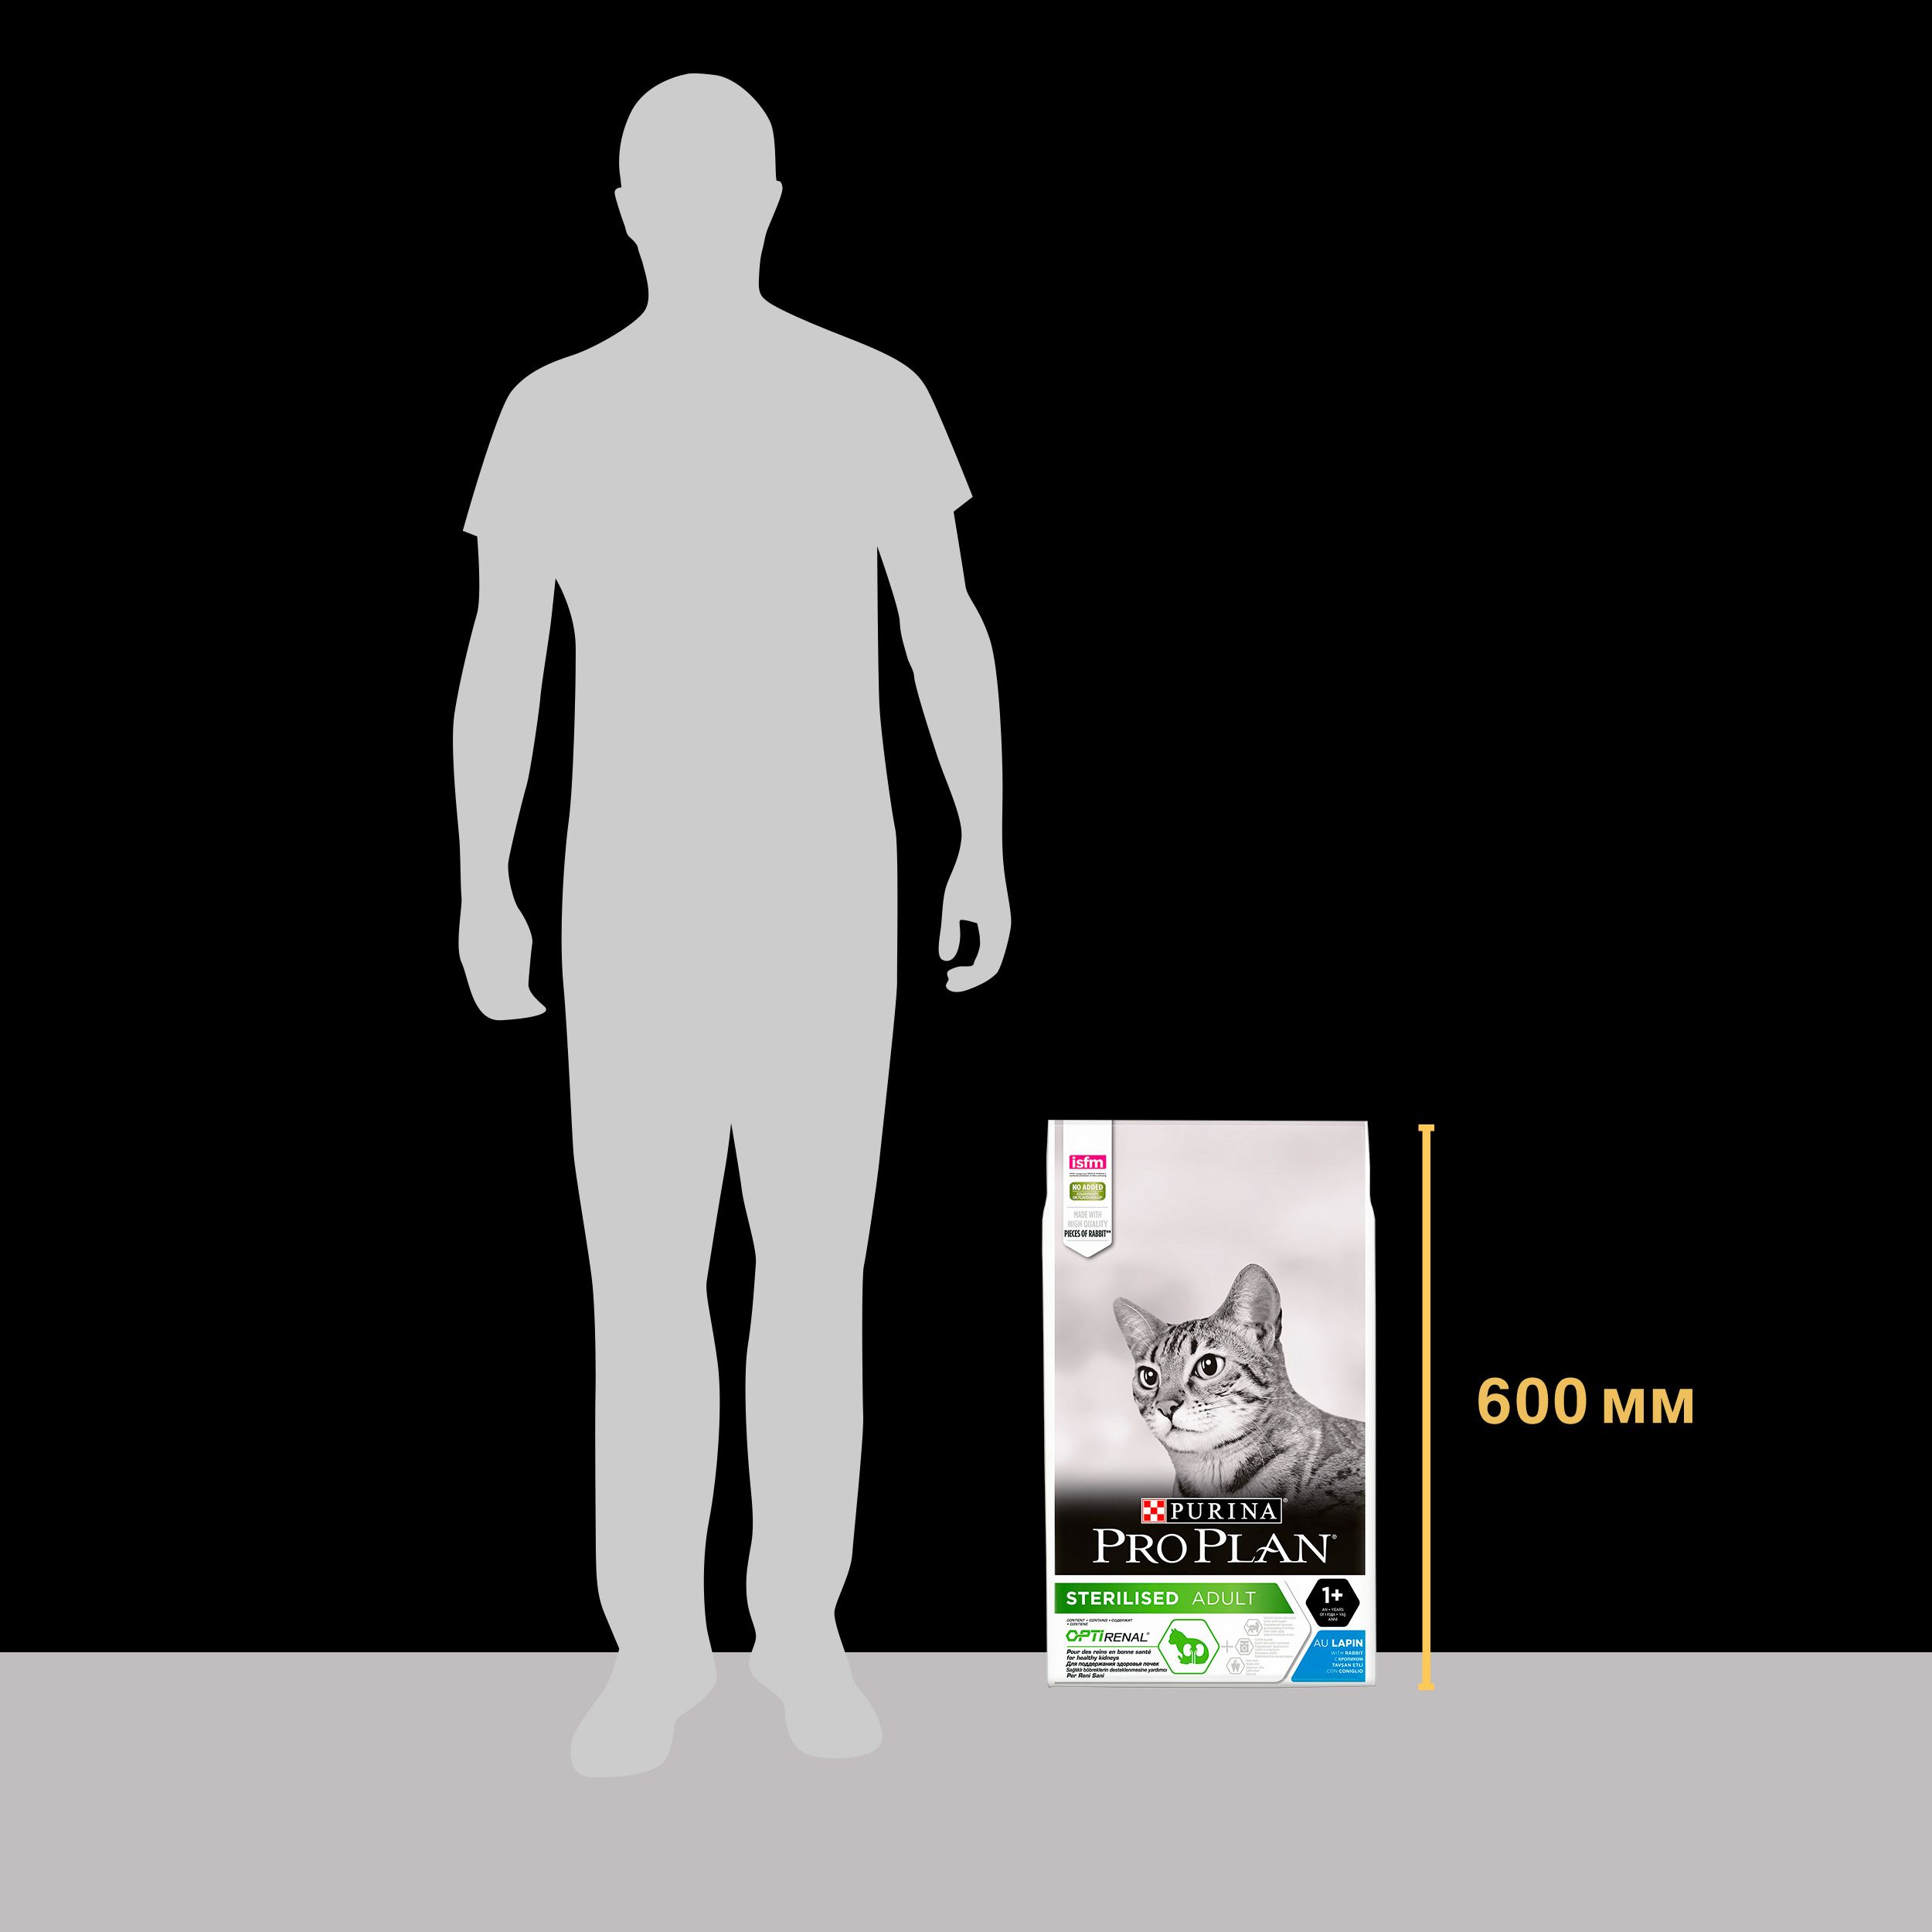 Корм сухой Purina Pro Plan Sterilised для взрослых стерилизованных кошек, с кроликом, 10 кг